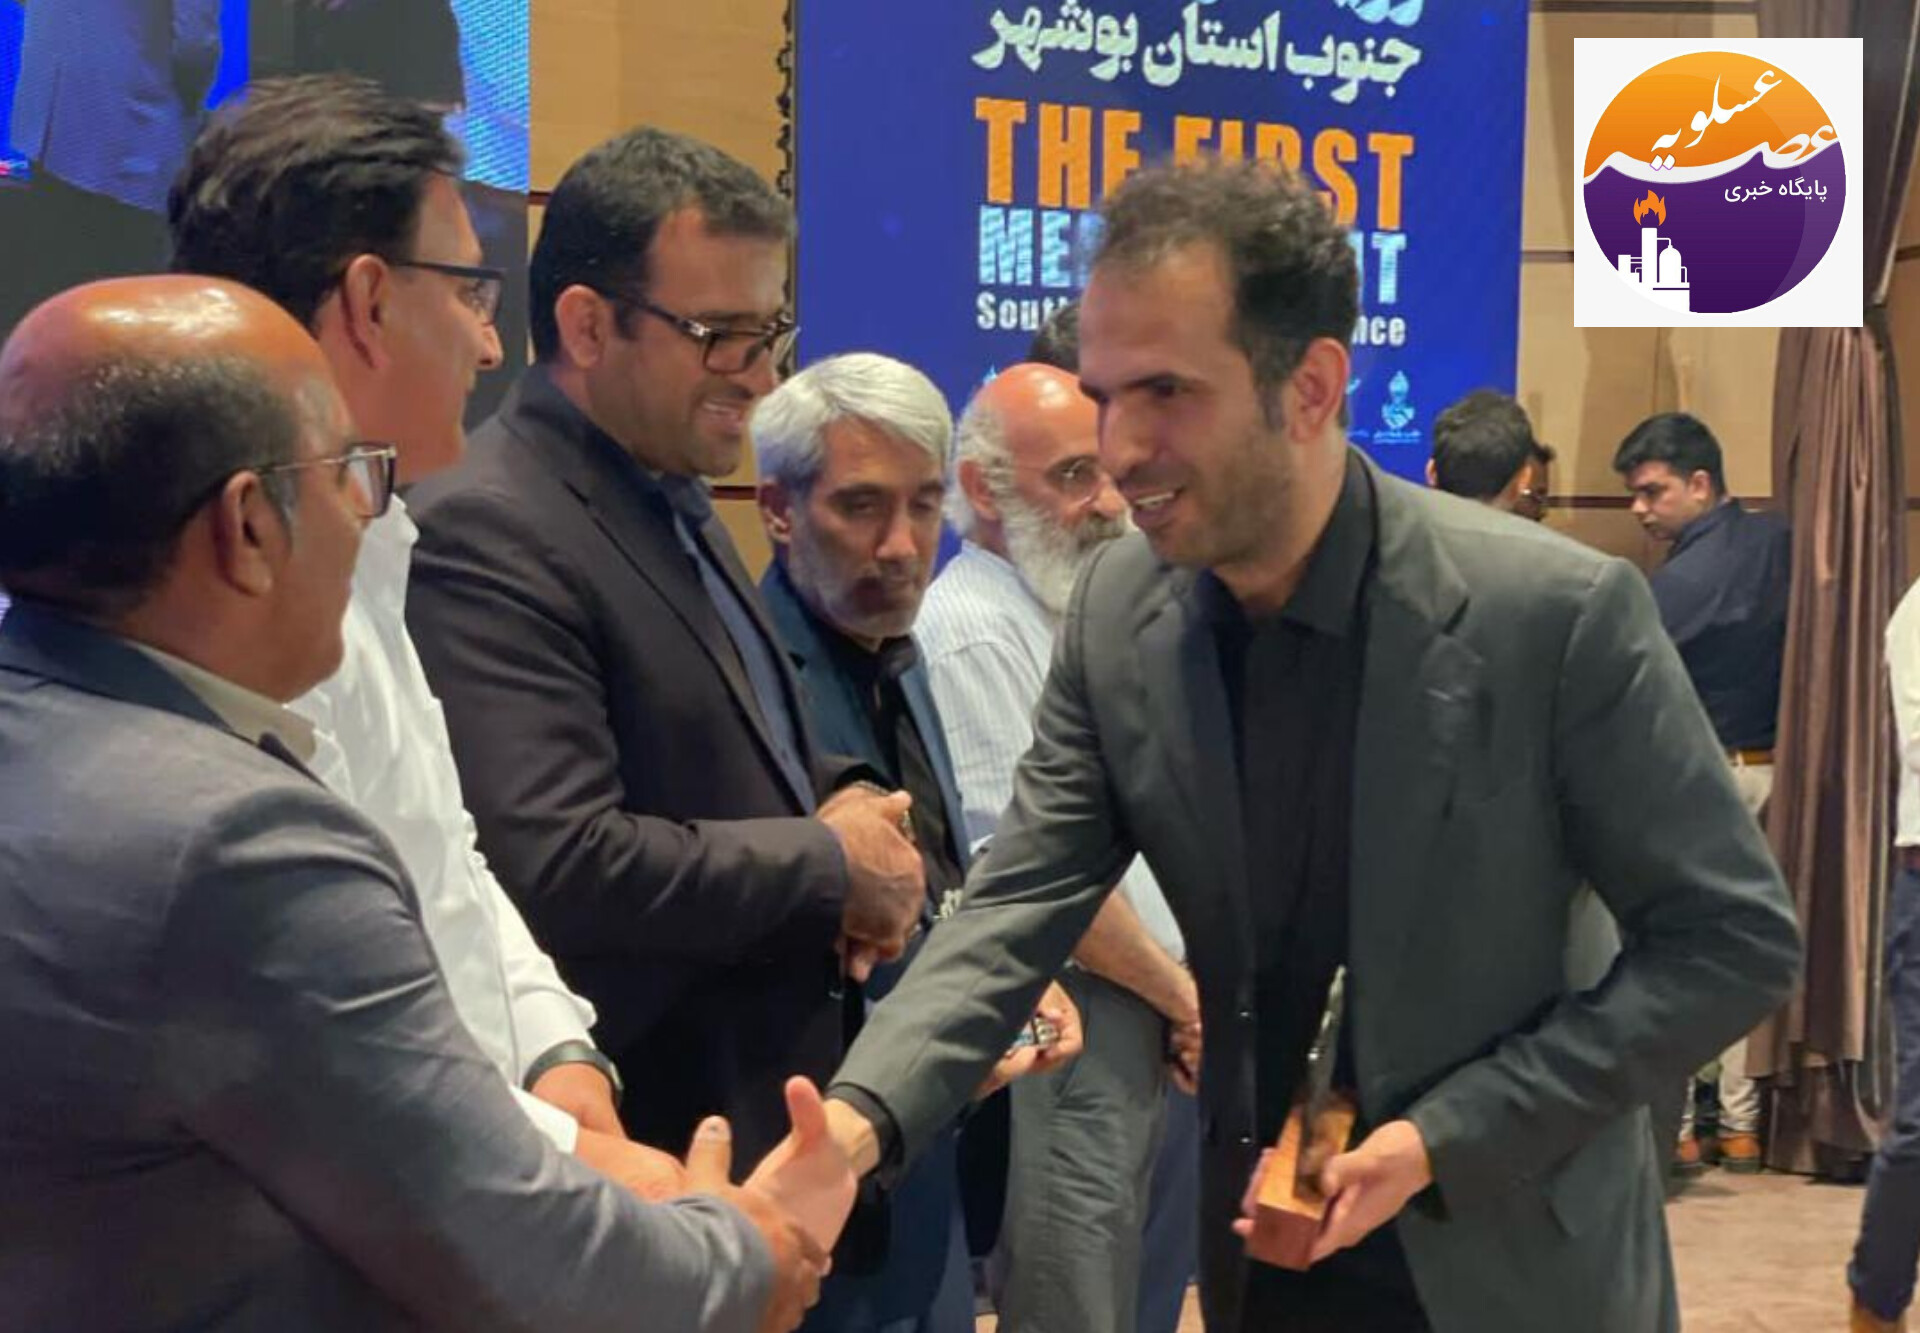 انتخاب پازارگاد به عنوان شرکت برتر در ارتباط با رسانه ها در اولین رویداد رسانه ایی جنوب استان بوشهر